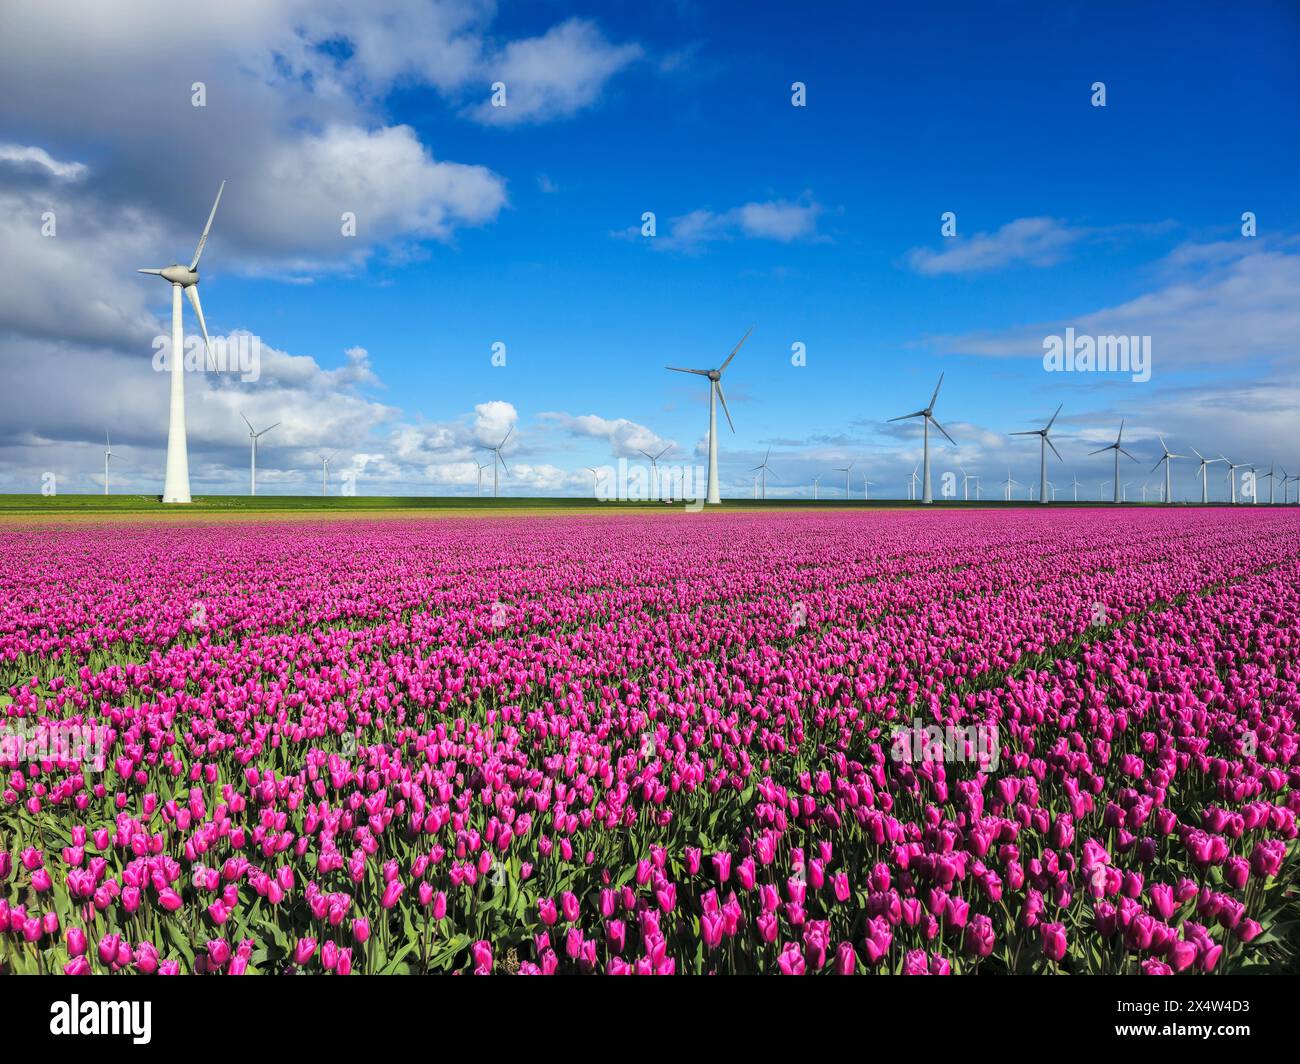 Ein faszinierender Anblick eines riesigen Feldes von violetten Tulpen, die im Wind tanzen, mit majestätischen Windmühlenturbinen, die hoch im Hintergrund unter dem cl stehen Stockfoto